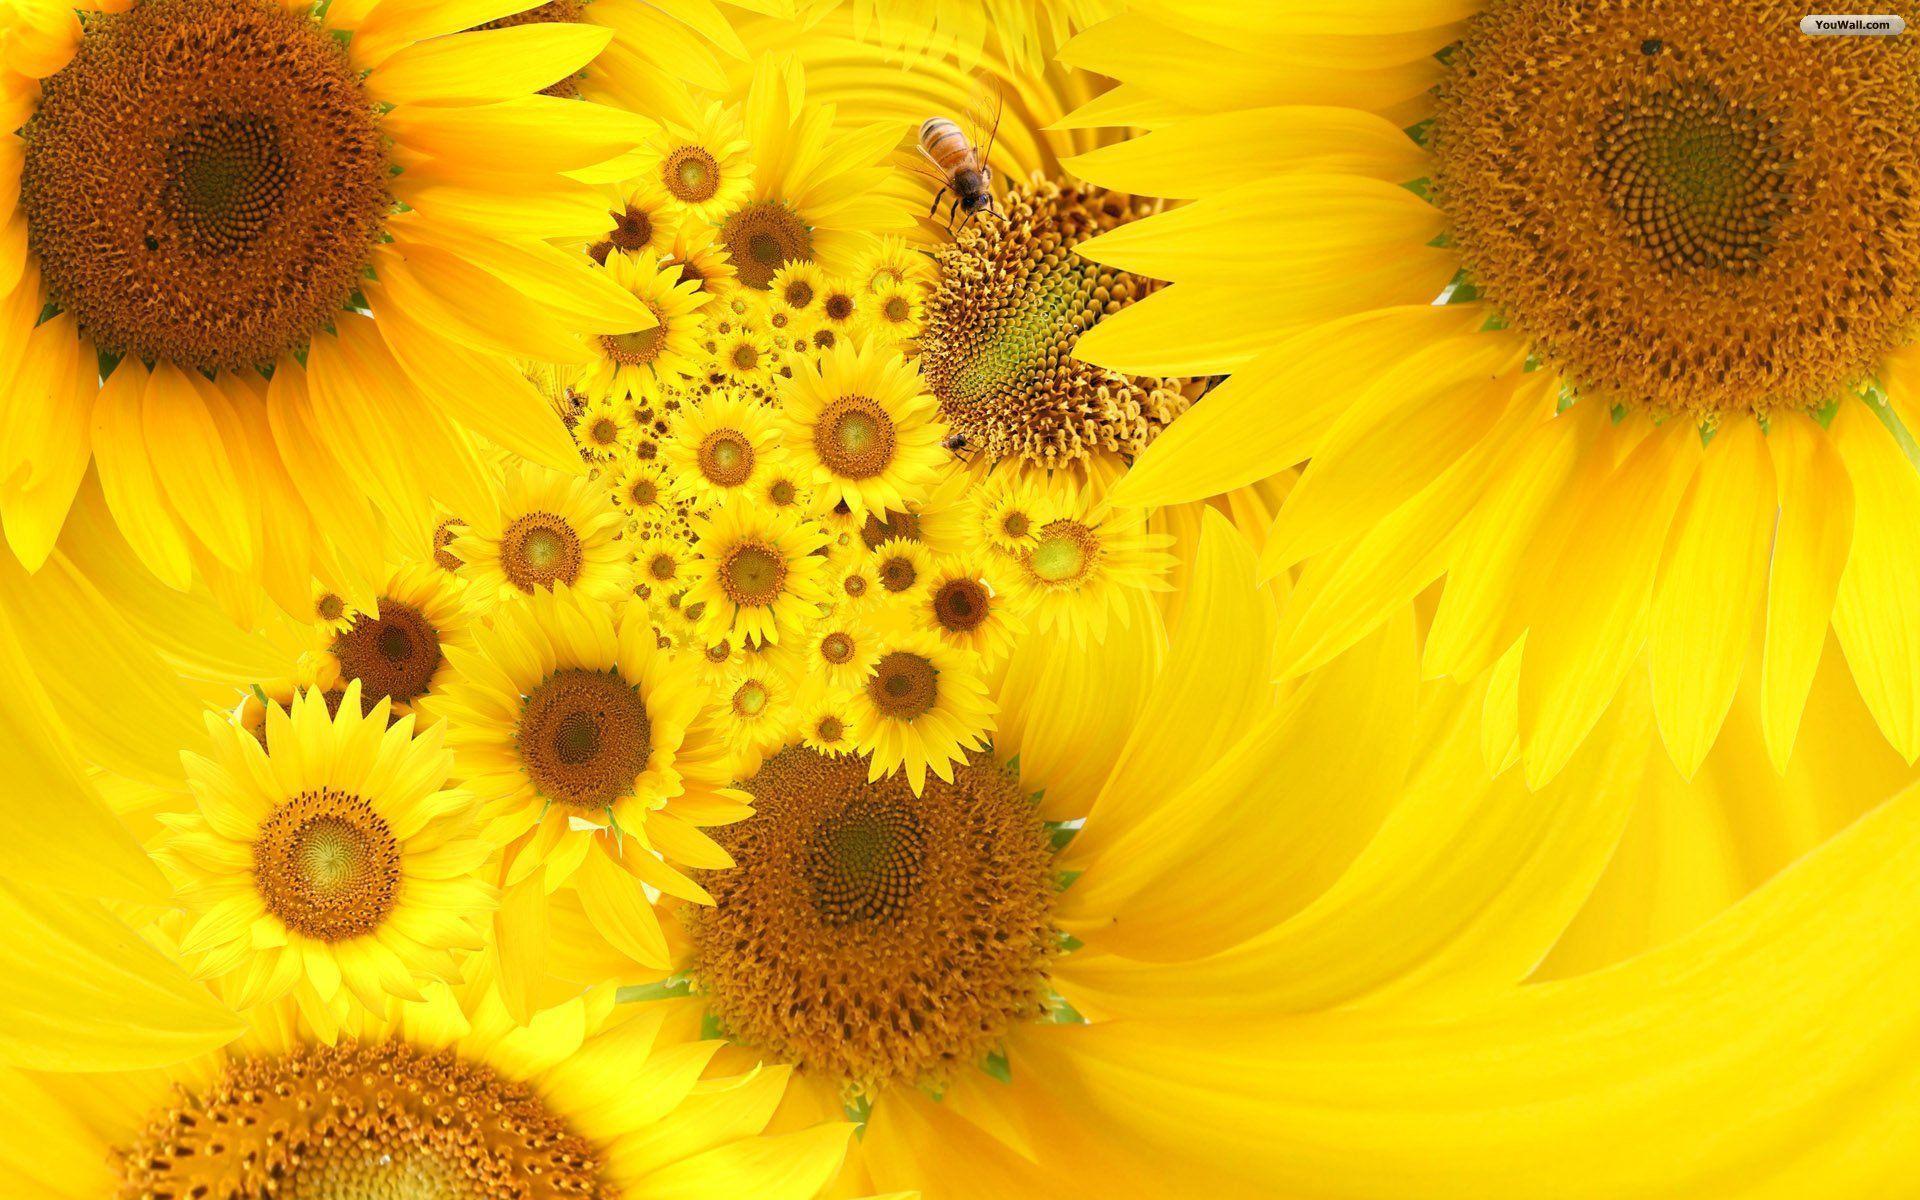 Cập nhật hình nền hoa hướng dương mới nhất cho ổ đĩa hình nền của bạn. Với những hình ảnh độc đáo và tươi sáng, bạn sẽ không thể chối từ một cuộc hành trình tuyệt vời đến với vẻ đẹp hoa hướng dương.